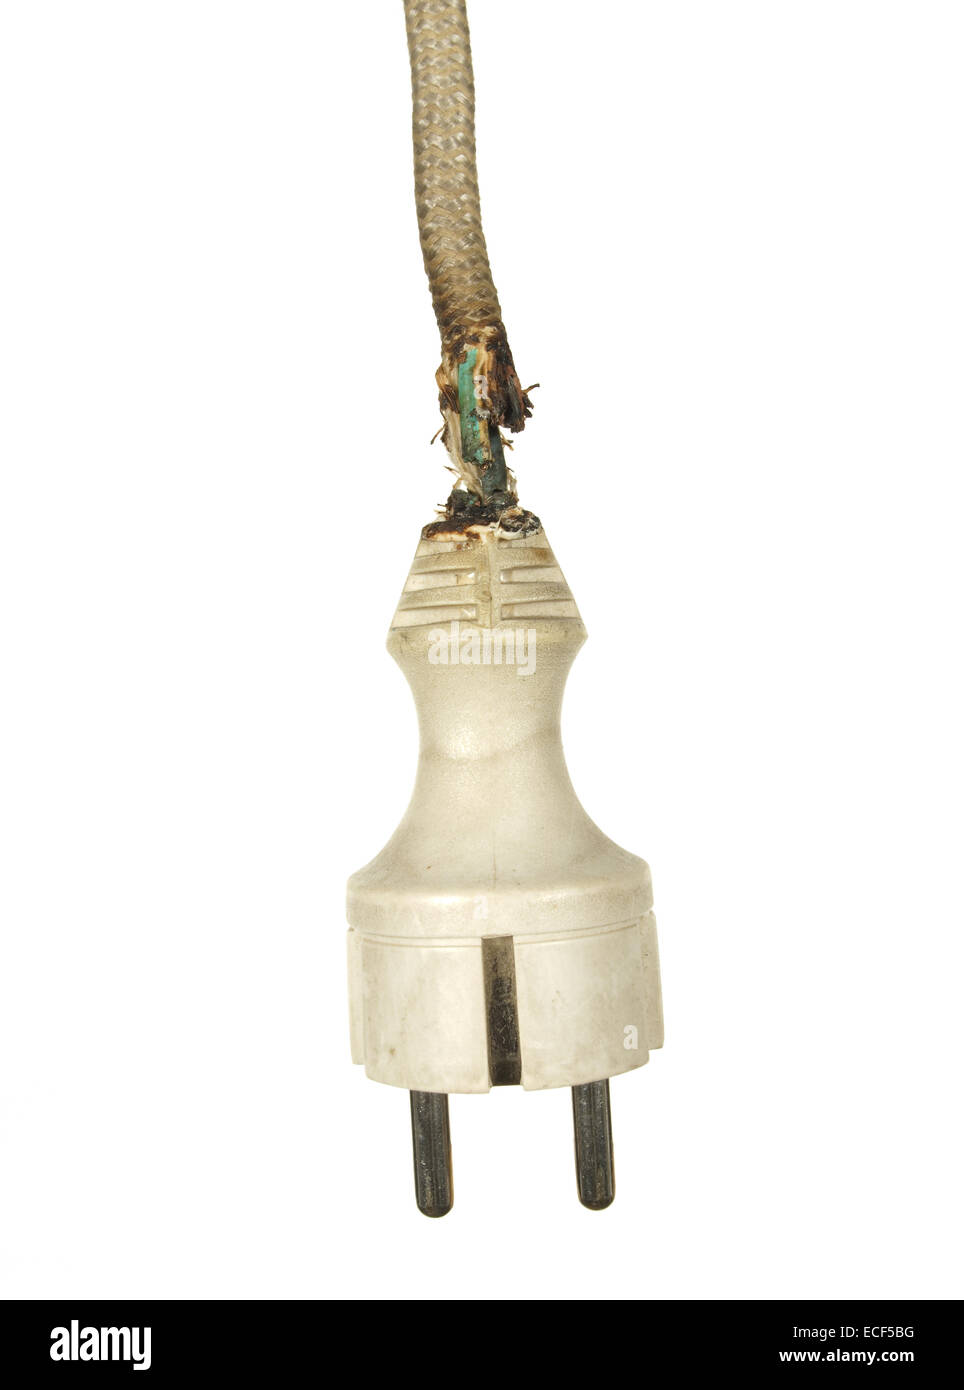 Alte elektrische Stecker weiß mit verbrannten Draht isoliert auf einem weißen Hintergrund. Stockfoto